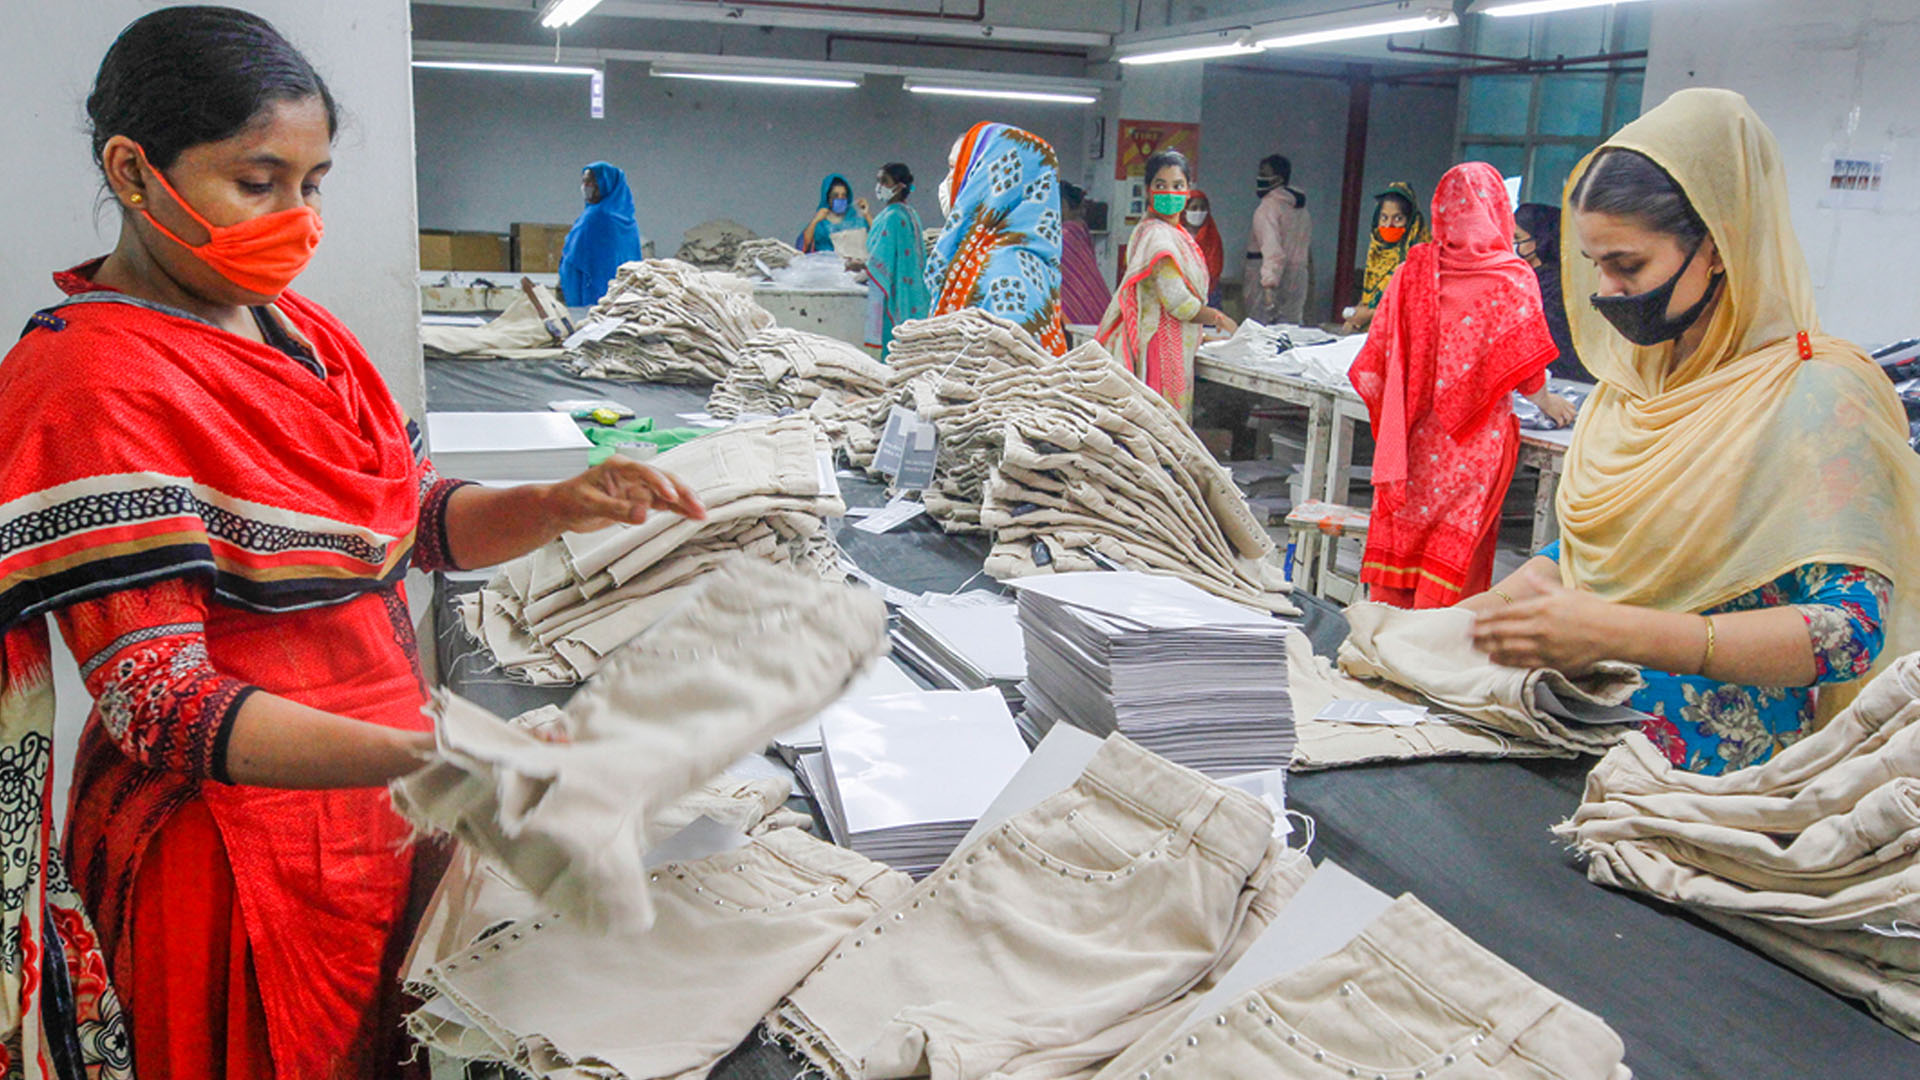 Frauen arbeiten in einer Bekleidungsfabrik in Dhaka | dpa